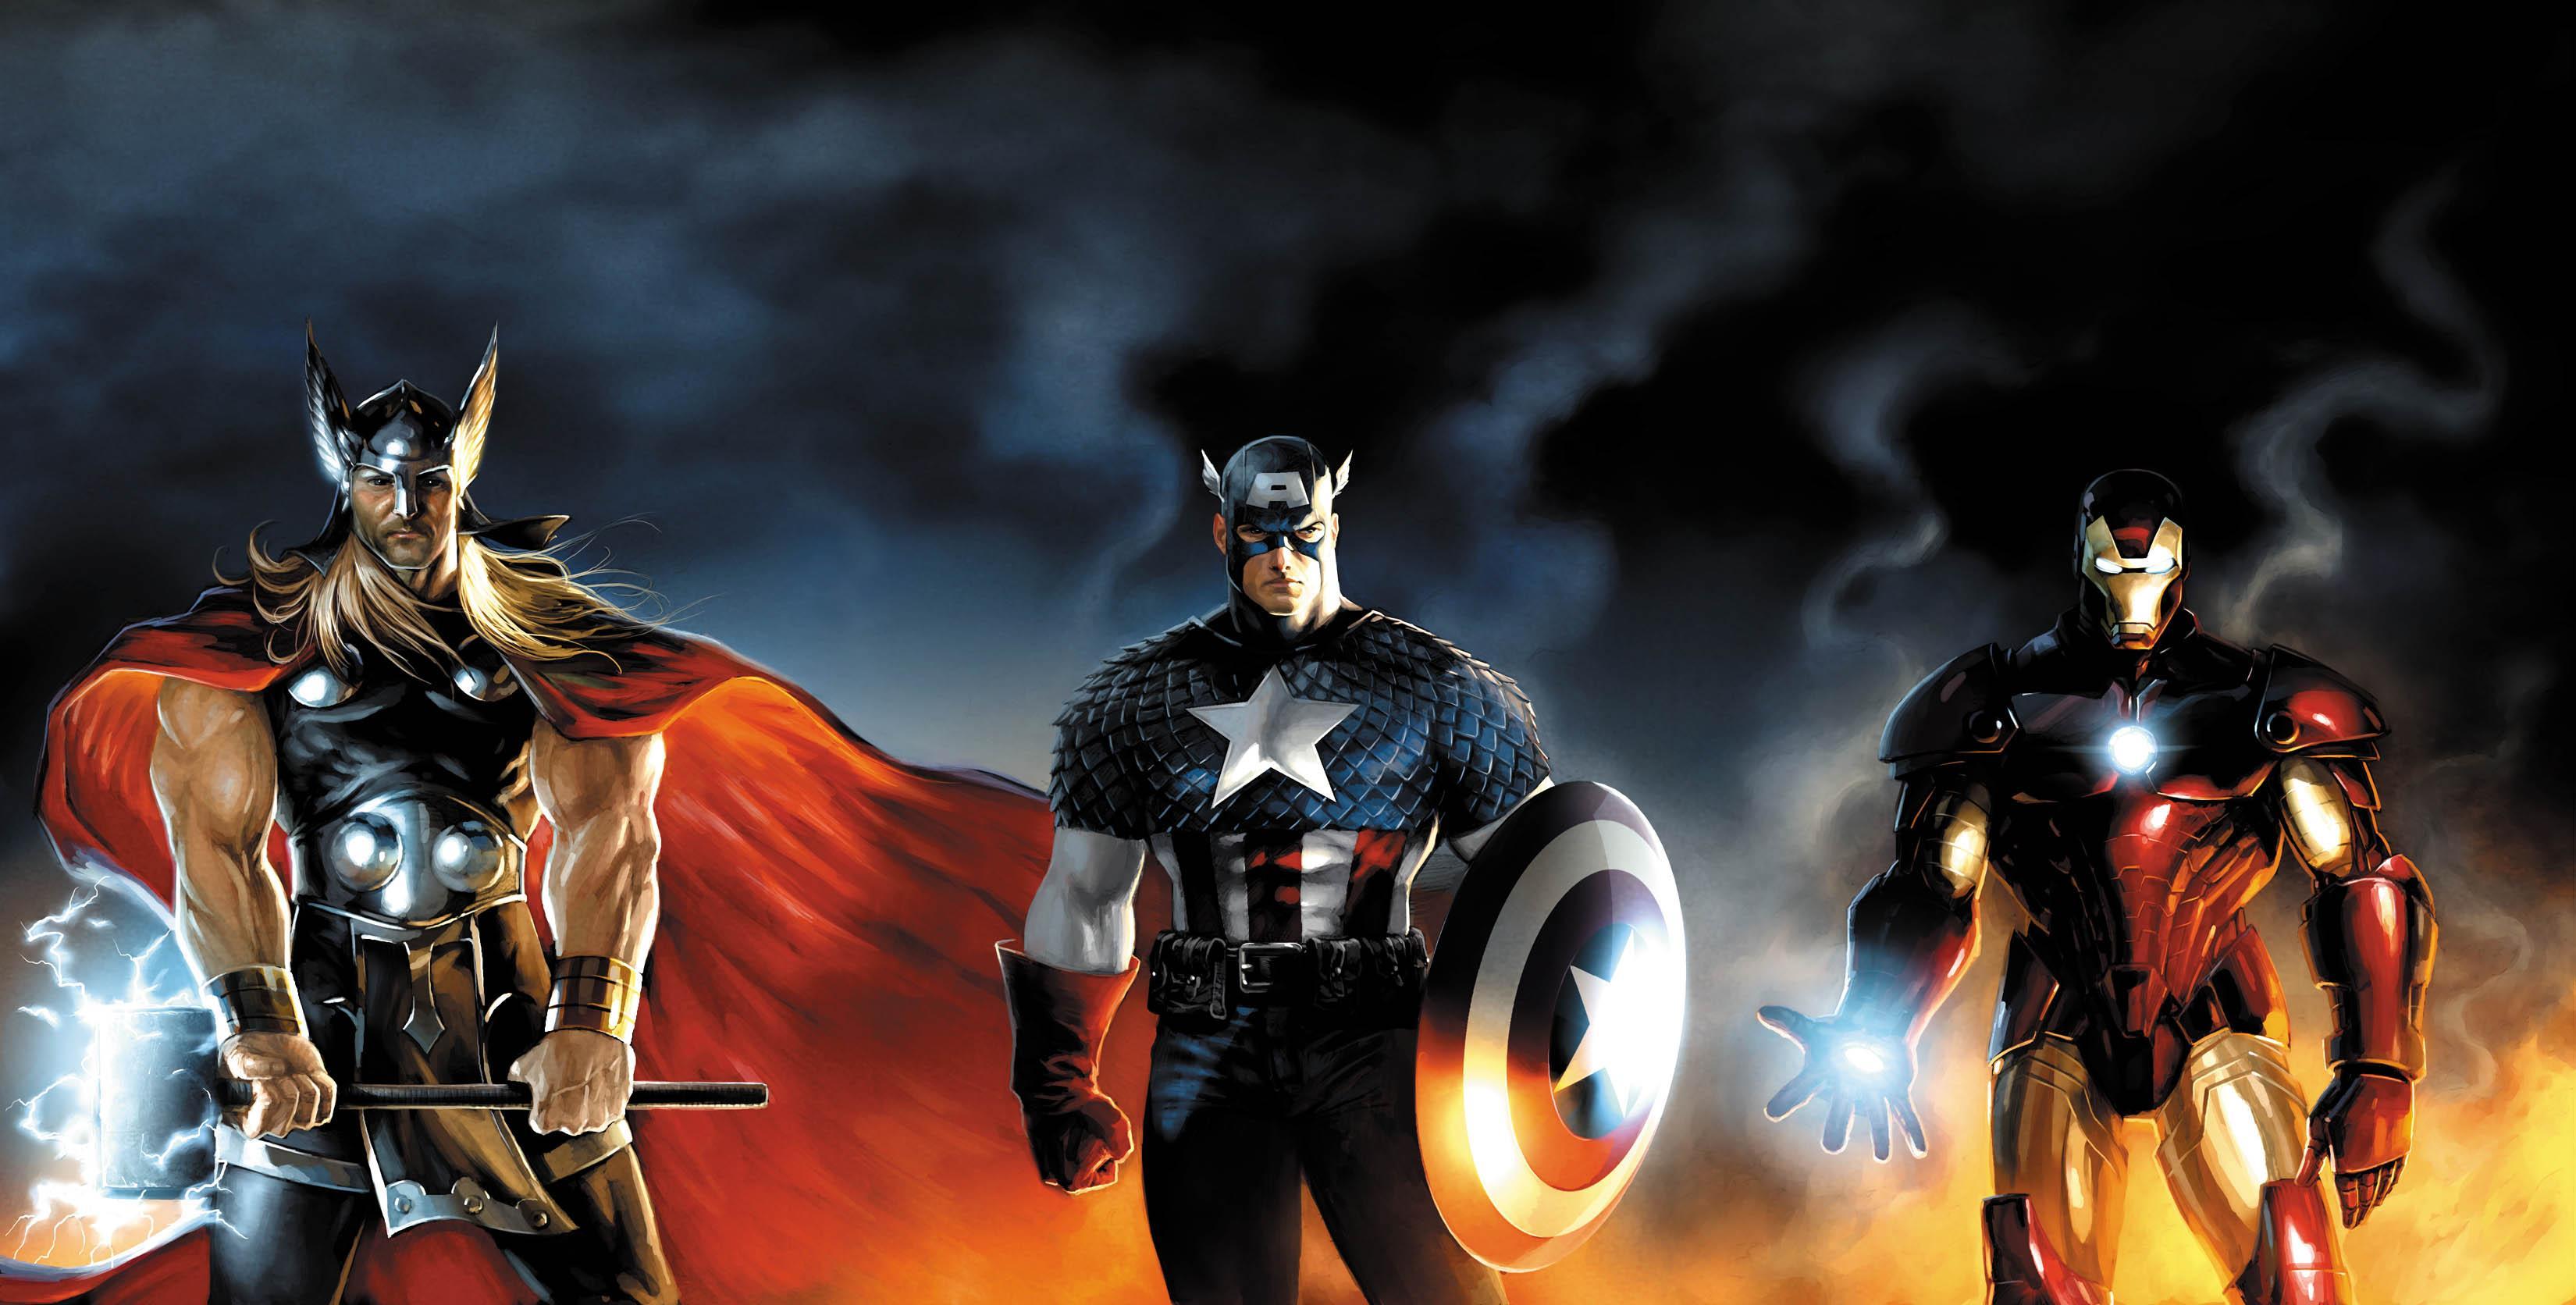 Avengers Endgame' Review: [Spoiler Alert] Major scene is a big nod